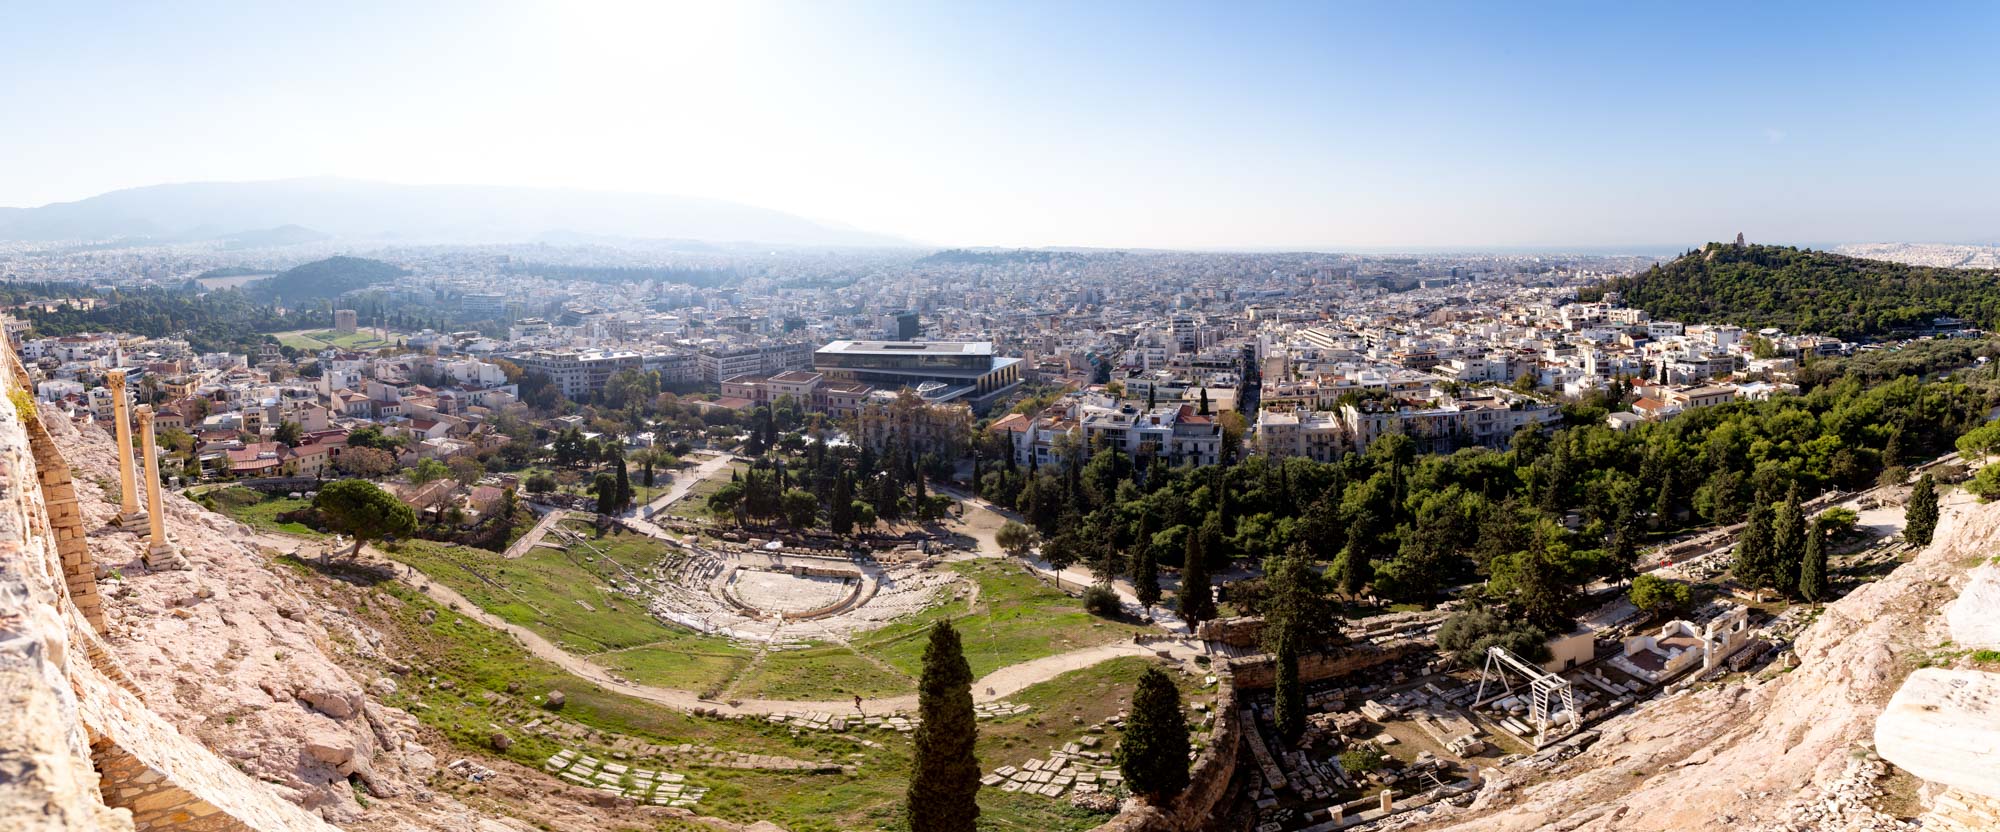 Ein Panorama von der Pantheon-Plattform in Athen